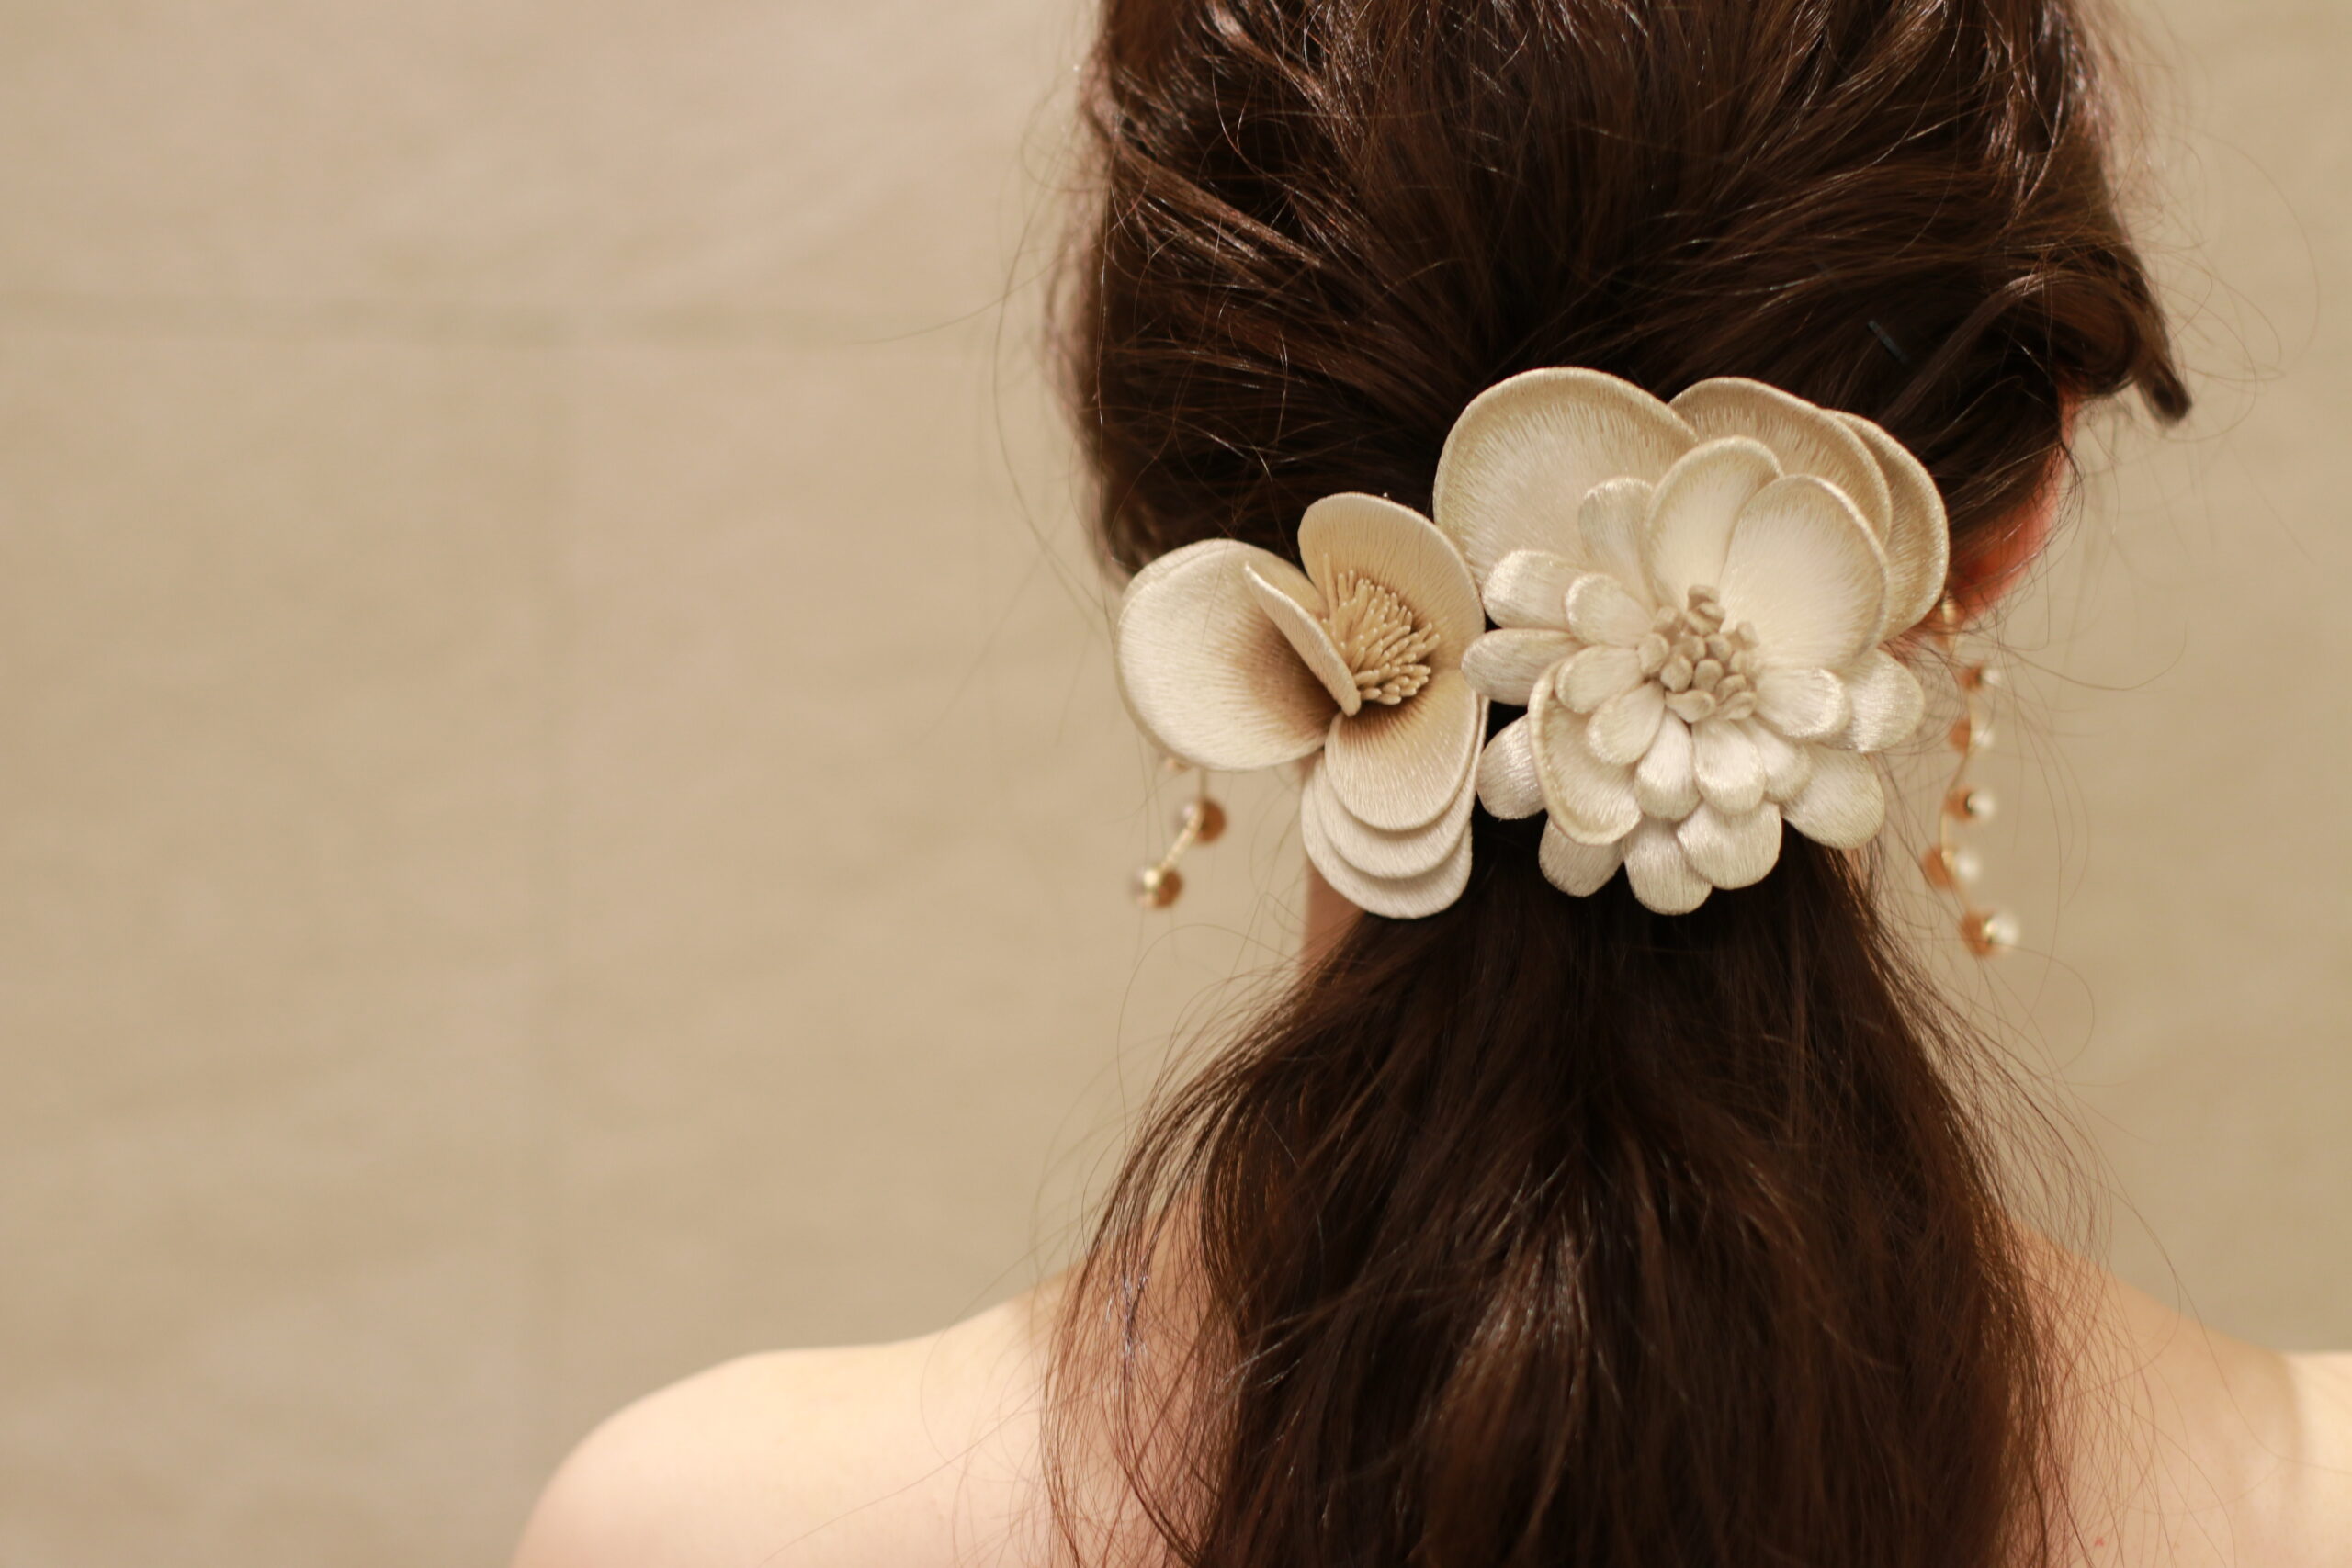 THE TREAT DRESSINGが取り扱う髪飾りは、群馬県桐生市の伝統産業である横振り刺繡によってつくられた架空のお花で、緩くまとめたローポニーのヘアスタイルにとてもよく合います